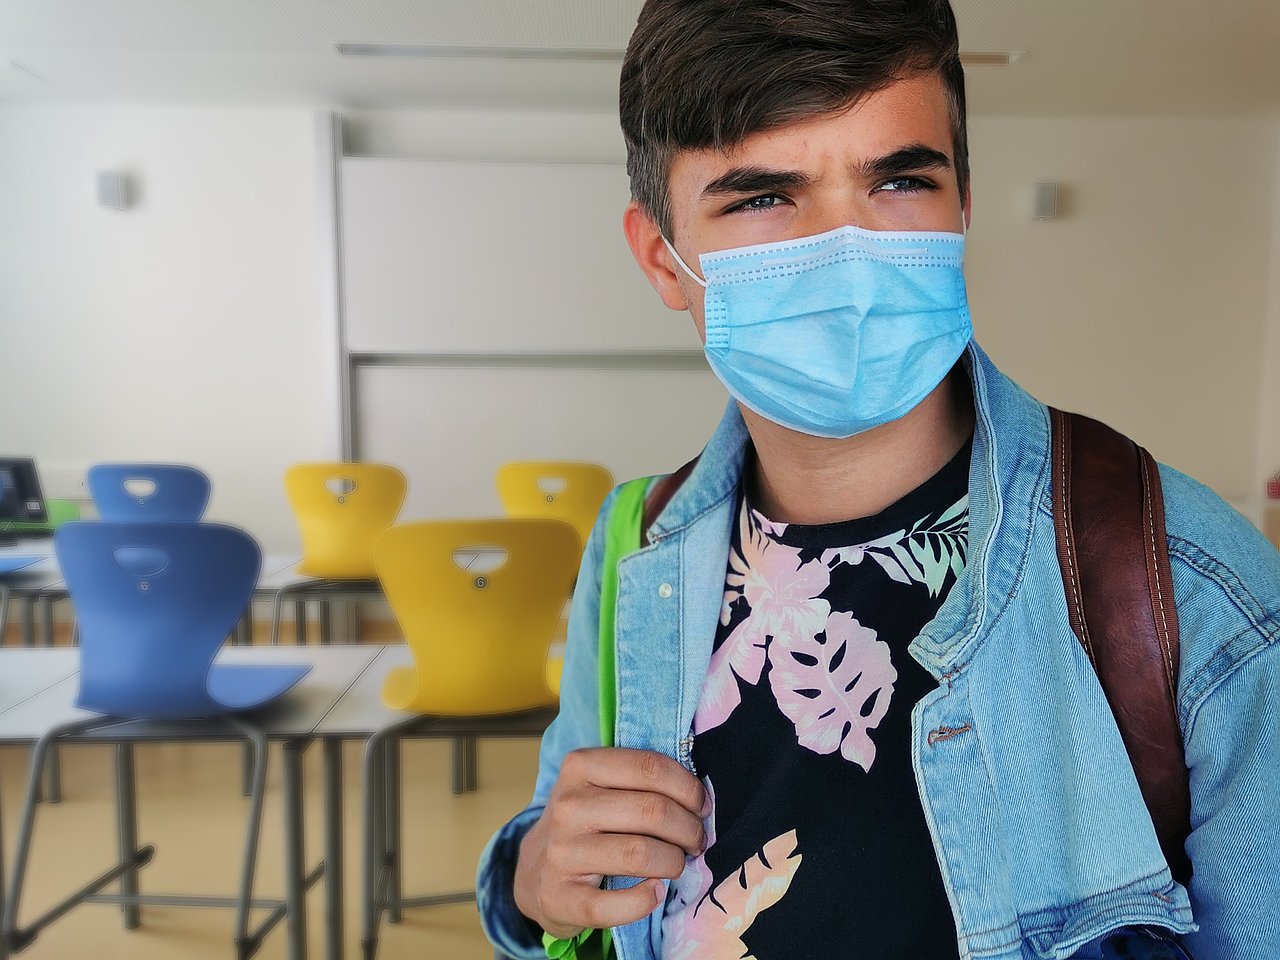 Das Bild zeigt einen Schüler, der eine medizinische Maske trägt, im leeren Klassenraum